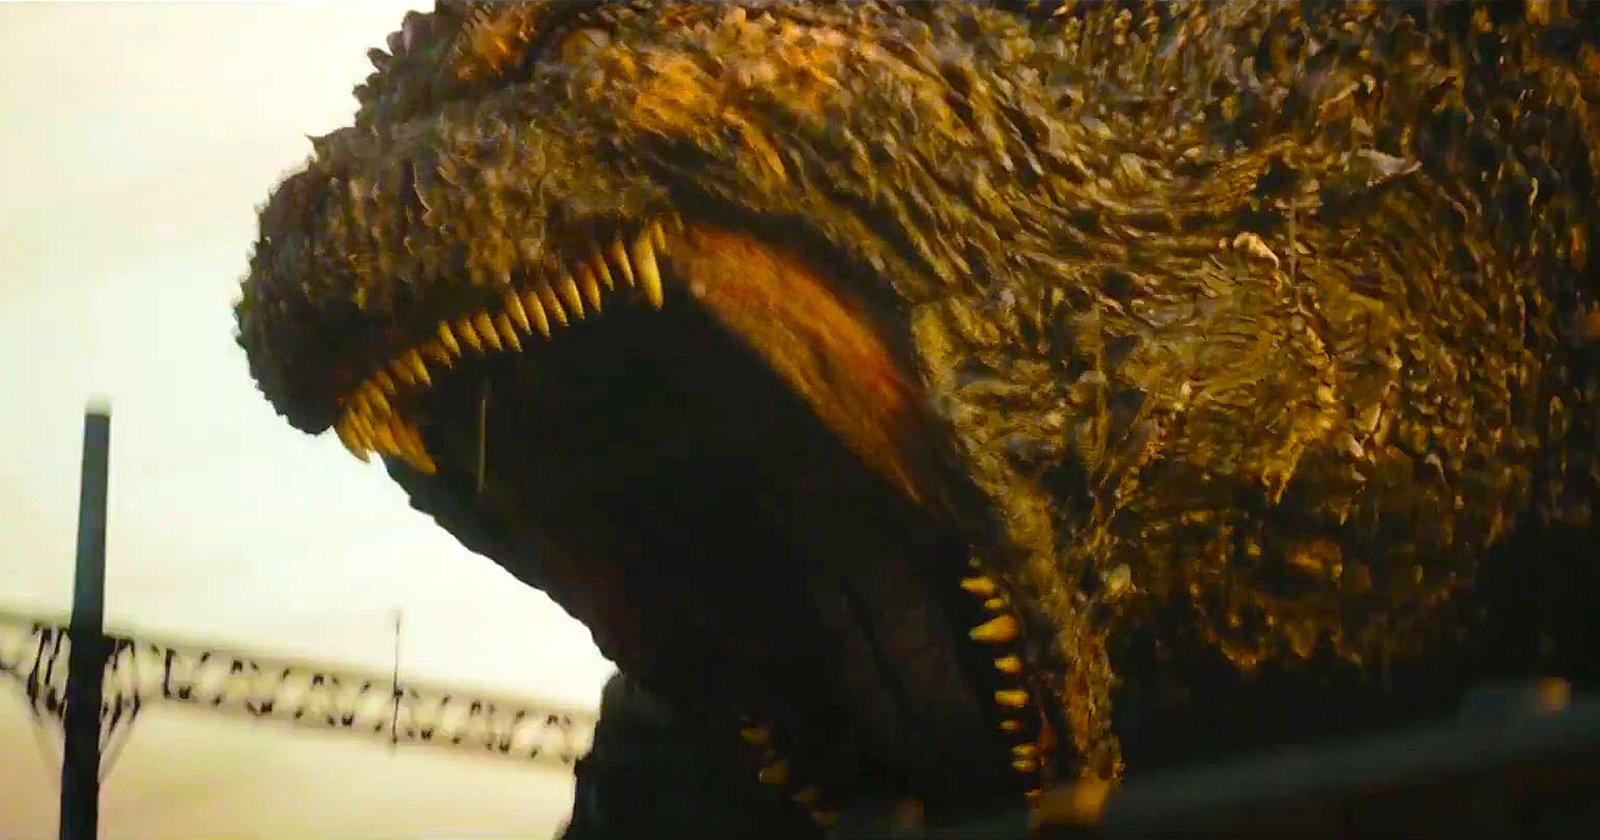 ชมดีไซน์ของ Godzilla ใหม่ใน ‘Godzilla Minus One’ กันแบบเต็ม ๆ